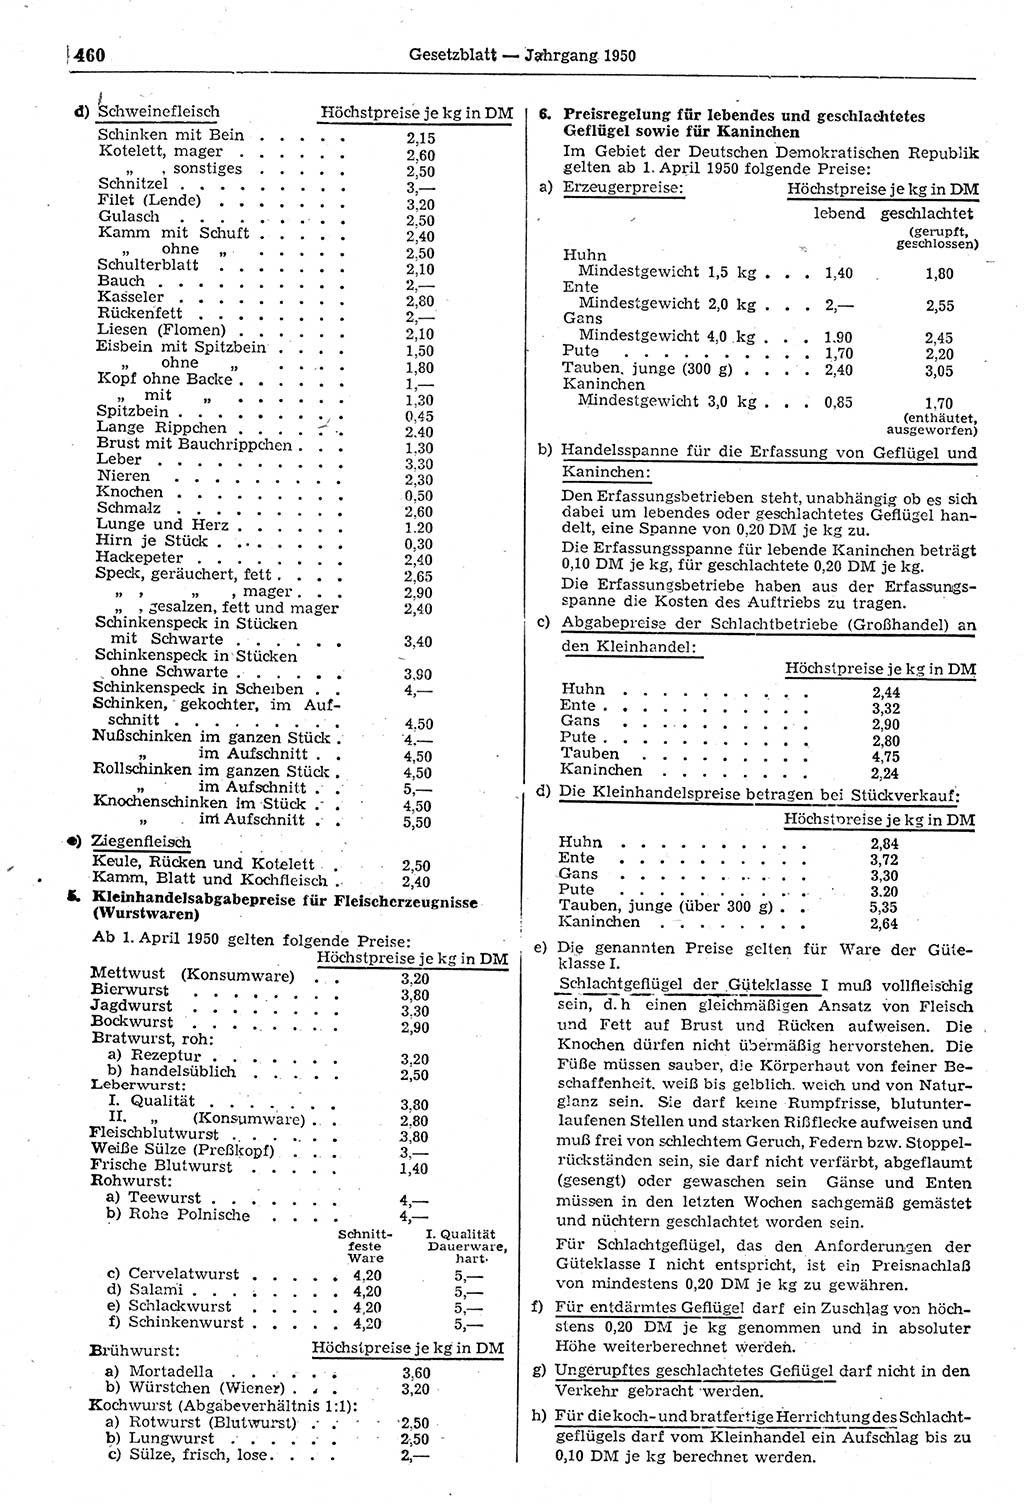 Gesetzblatt (GBl.) der Deutschen Demokratischen Republik (DDR) 1950, Seite 460 (GBl. DDR 1950, S. 460)